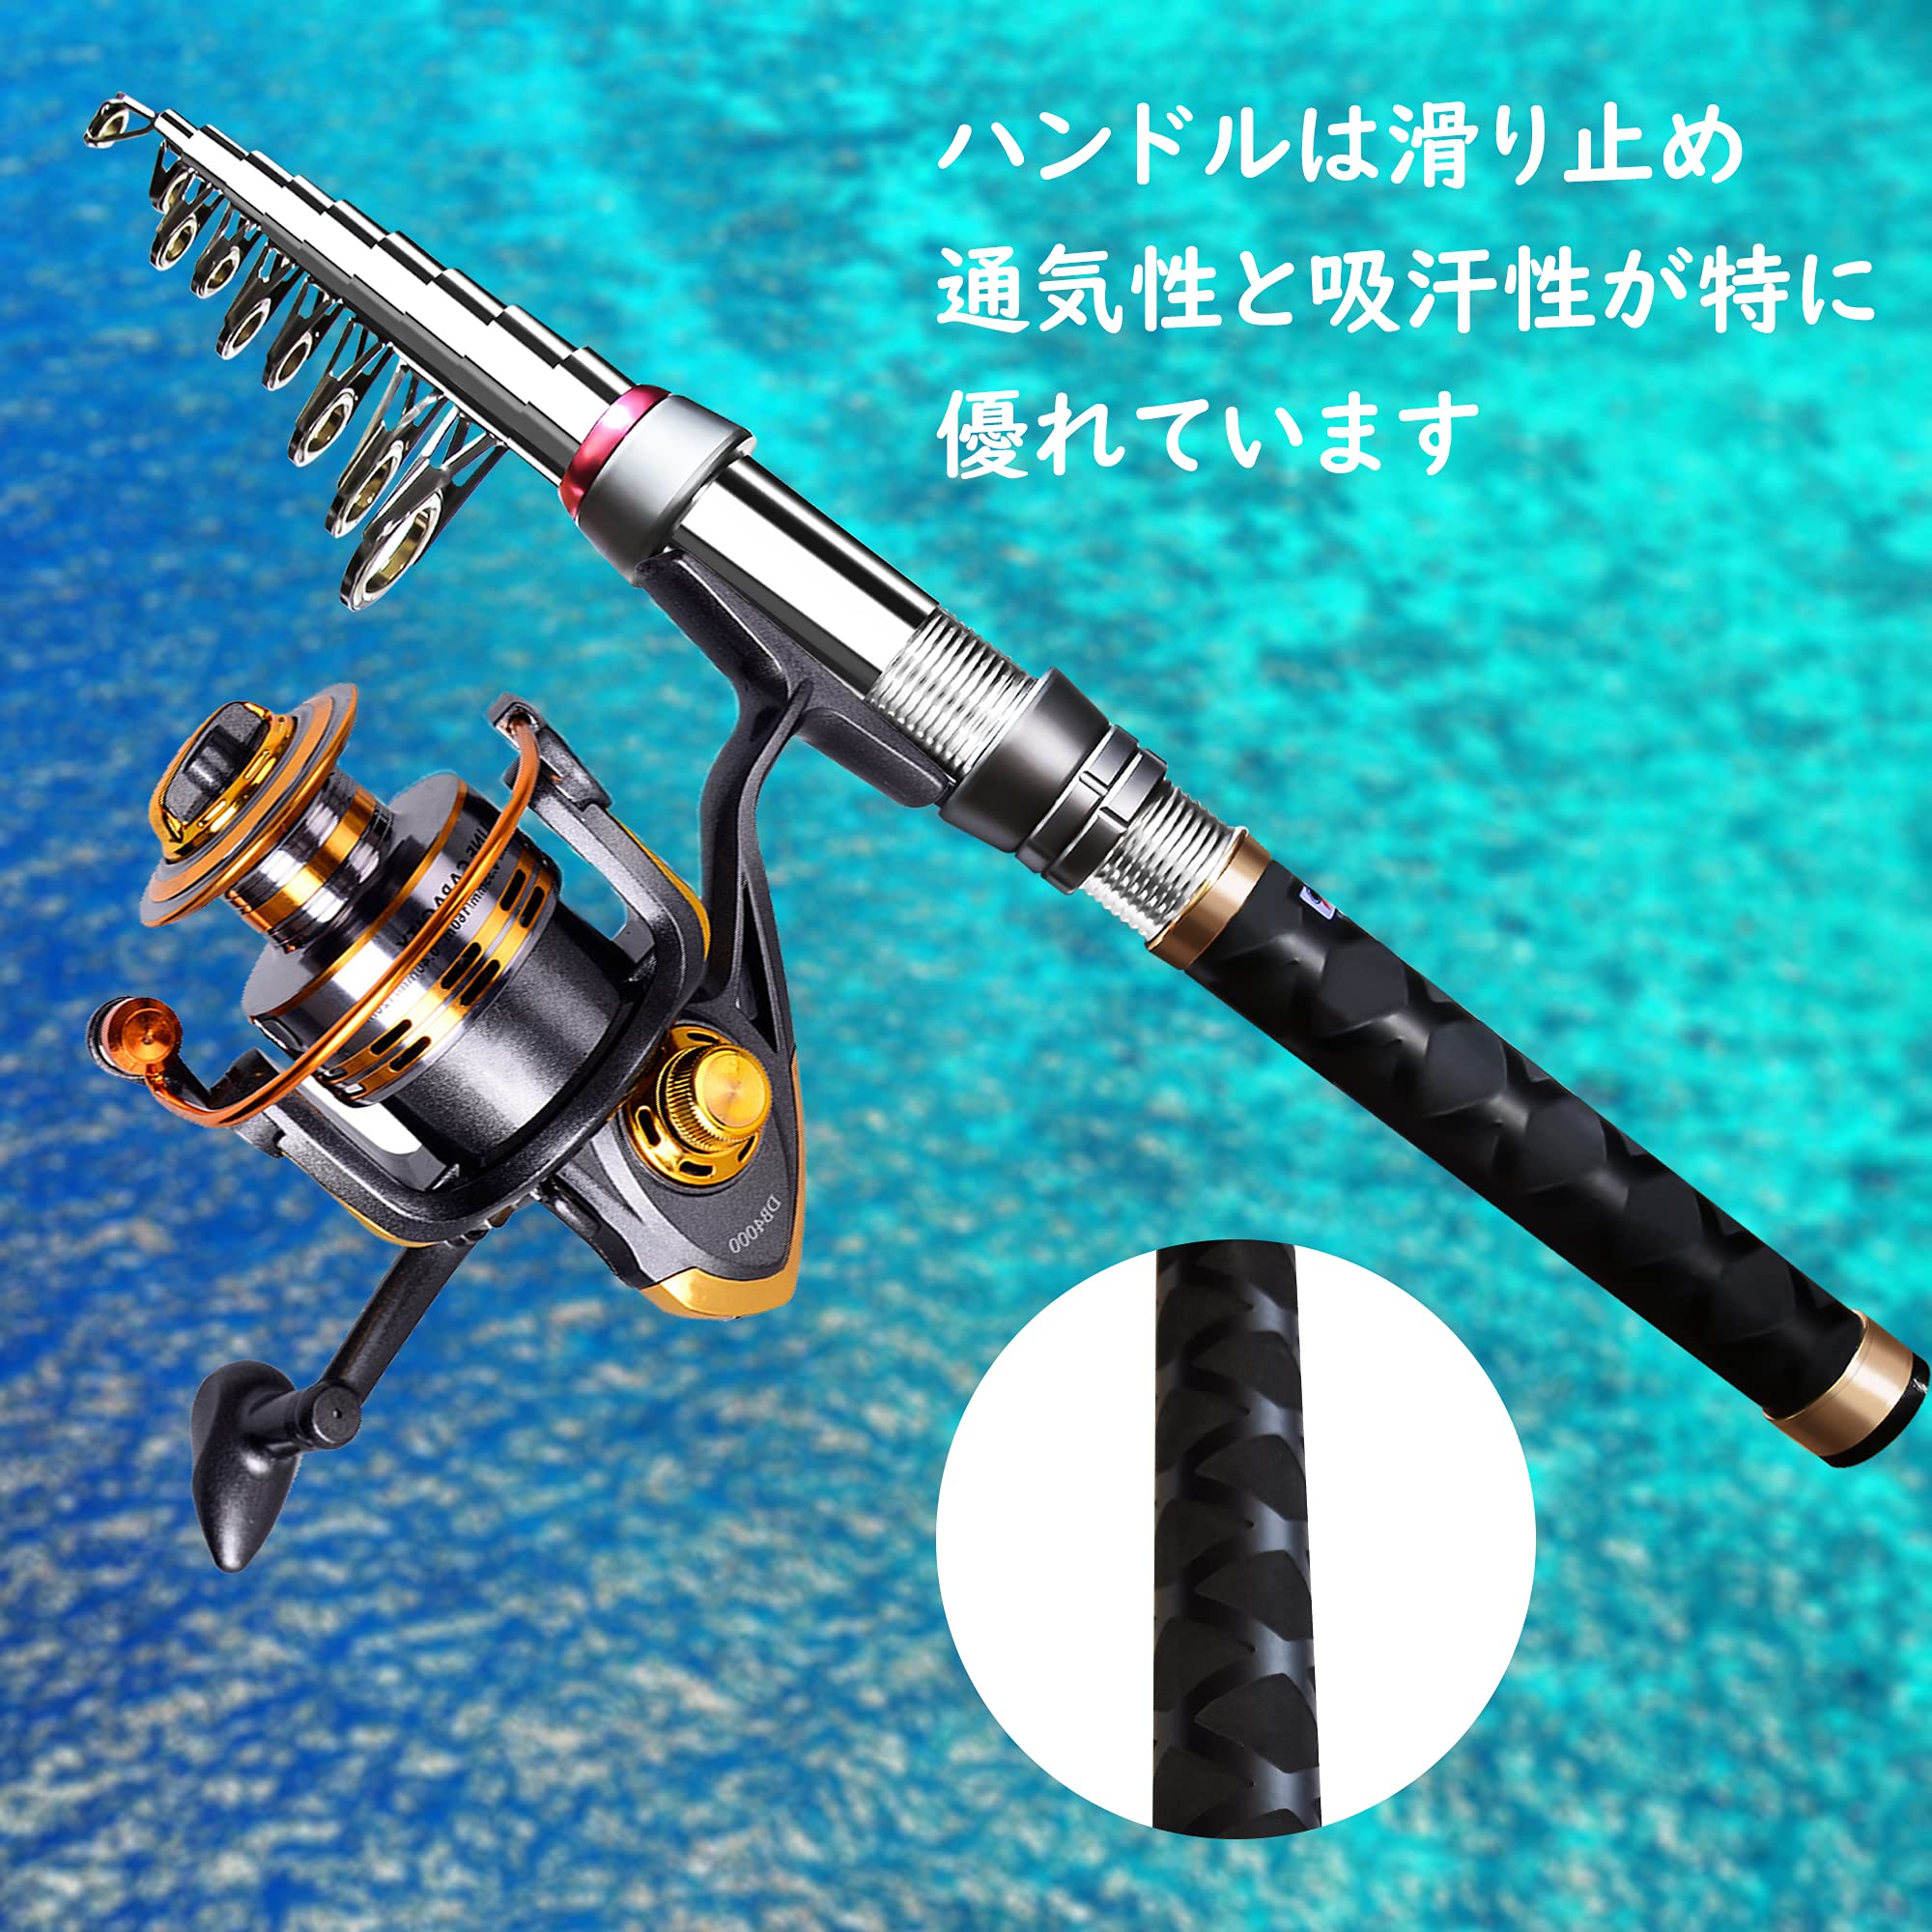 YU67 ロッド コンパクト 釣り竿 投げ竿 釣竿 炭素繊維 伸縮式 3mフィッシング